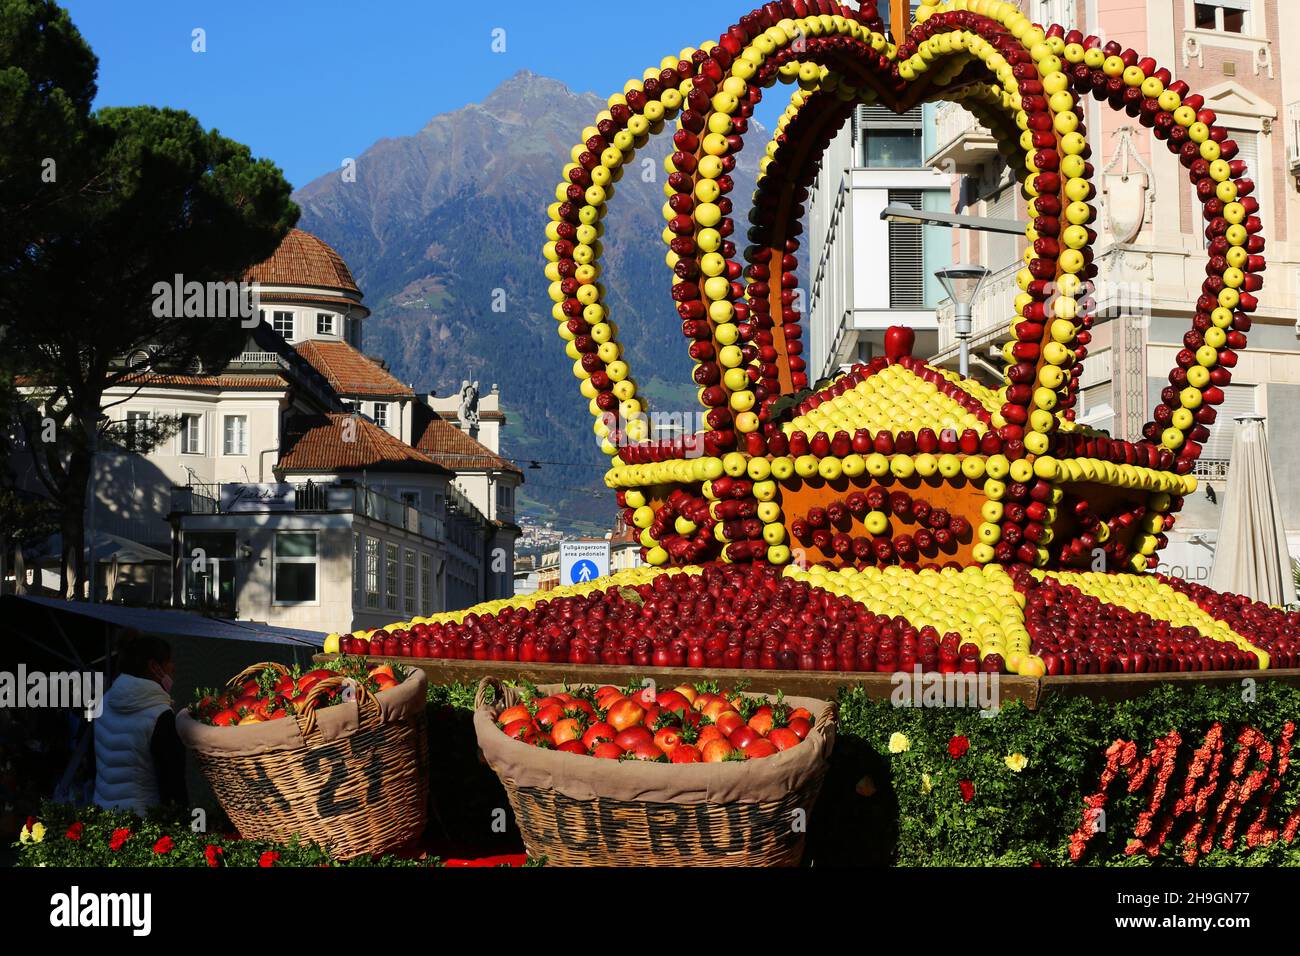 Apfel, Meran, Kurstadt, Weinfest, Trachtenfest, Krone, Äpfel dekoriert zum großen Fest in Südtirol, Italien. Stock Photo